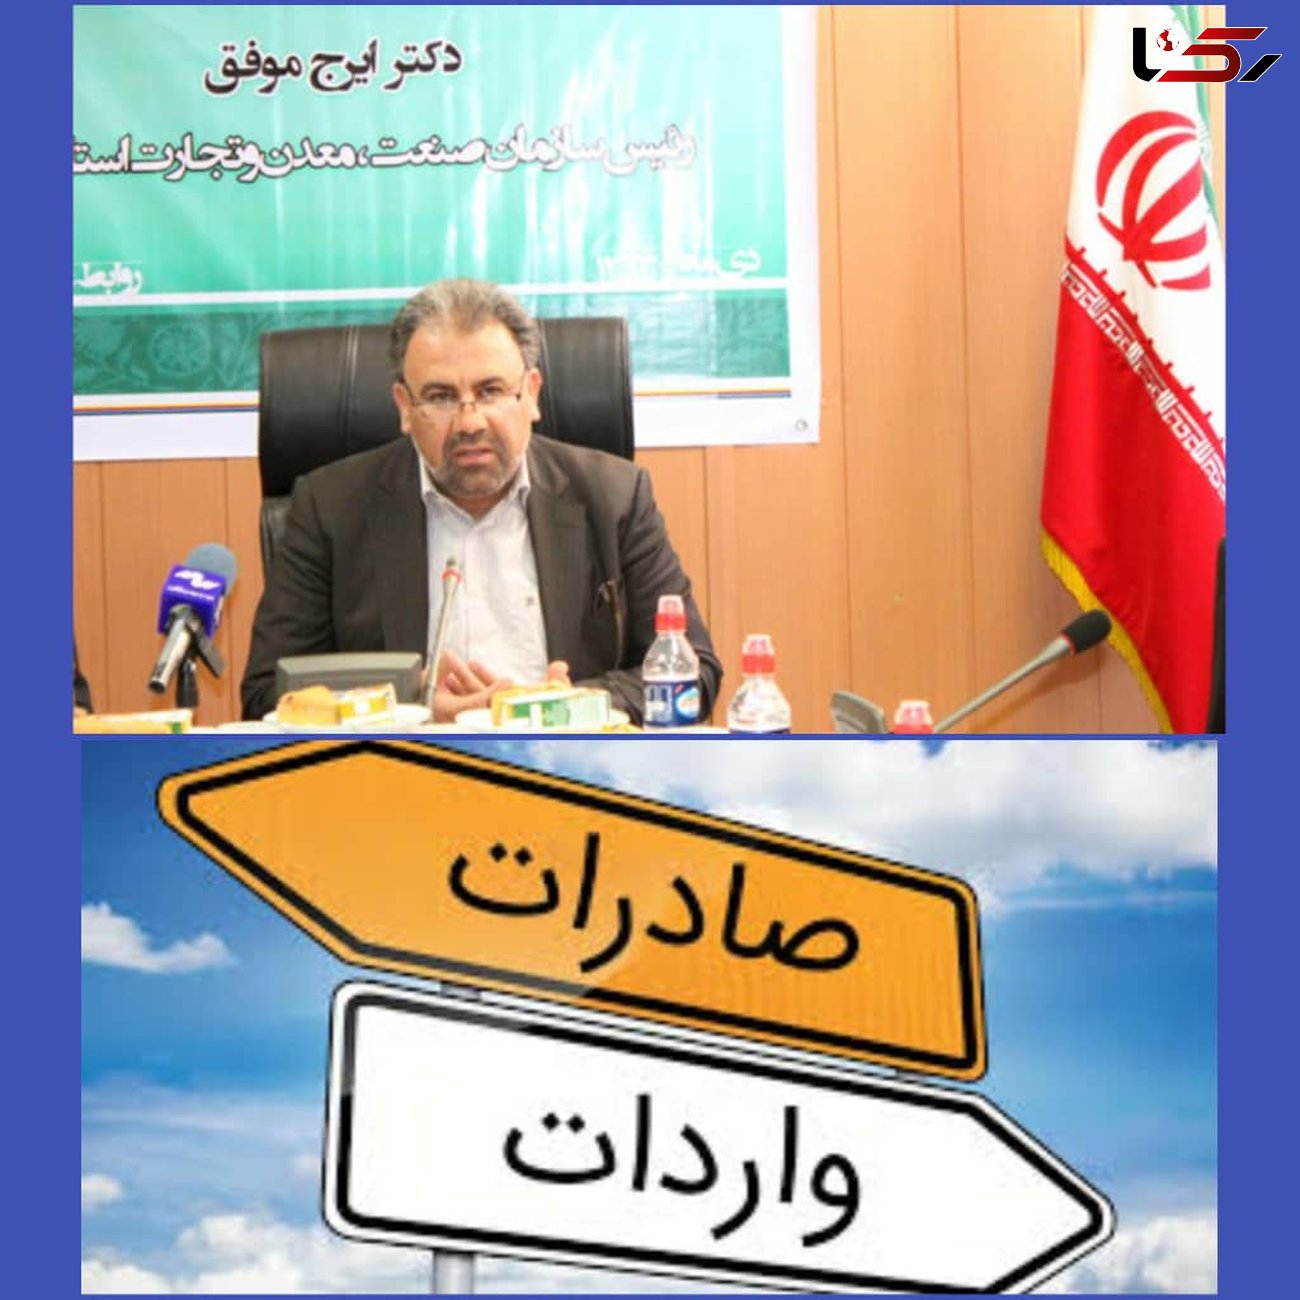 صادرات اصفهان چهار برابر واردات این استان است 